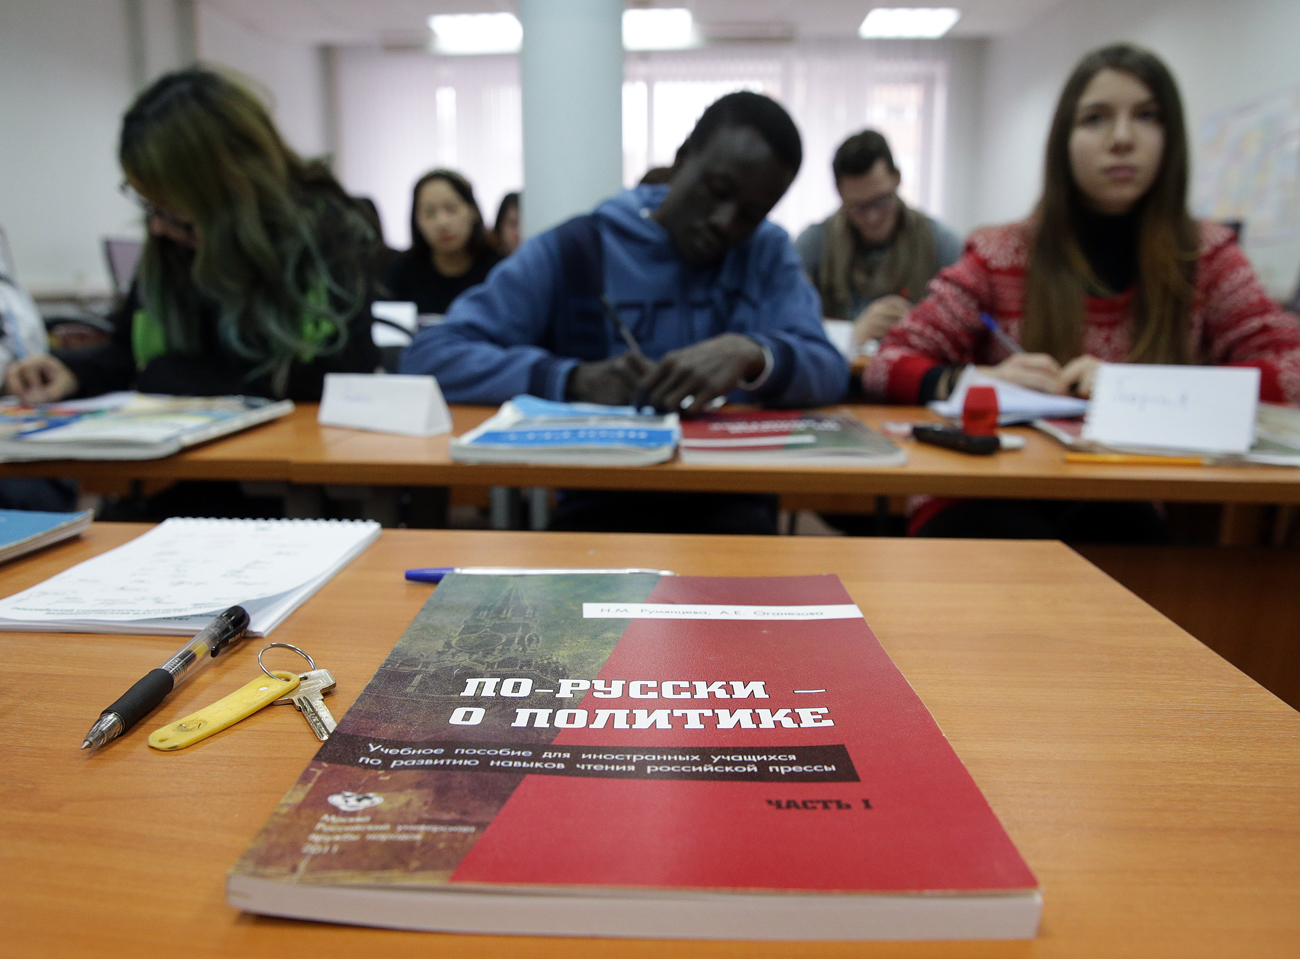 La maggior parte degli studenti stranieri in Russia (61,6%) studia a proprie spese, circa 113mila persone.